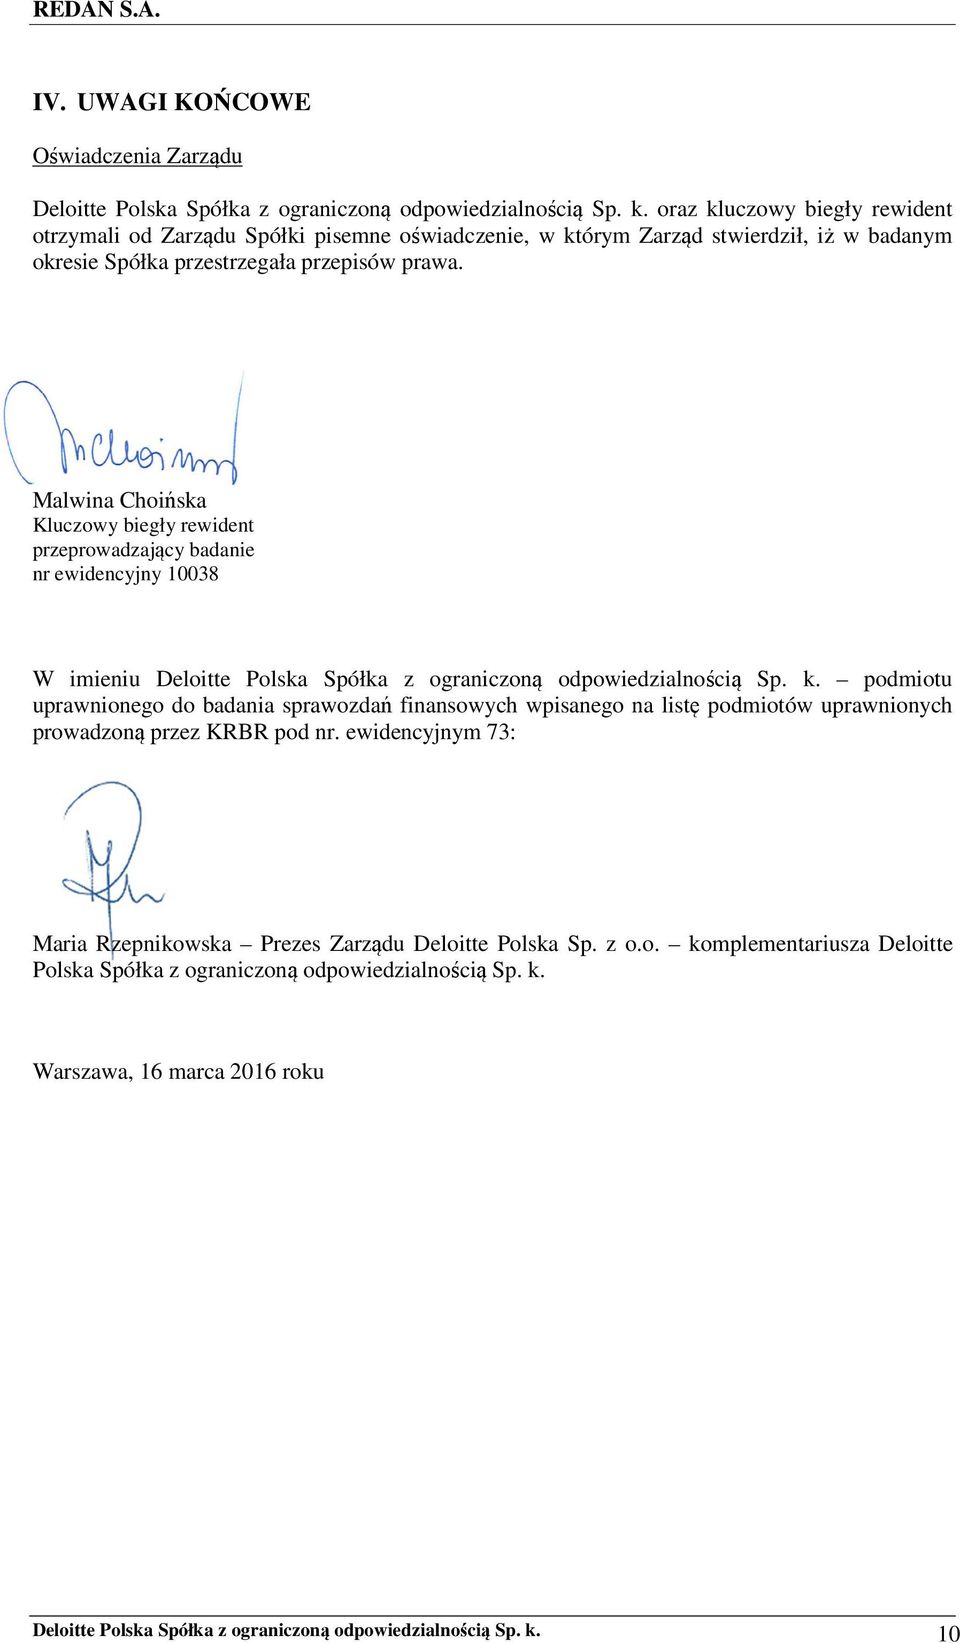 Malwina Choińska Kluczowy biegły rewident przeprowadzający badanie nr ewidencyjny 10038 W imieniu Deloitte Polska Spółka z ograniczoną odpowiedzialnością Sp. k.